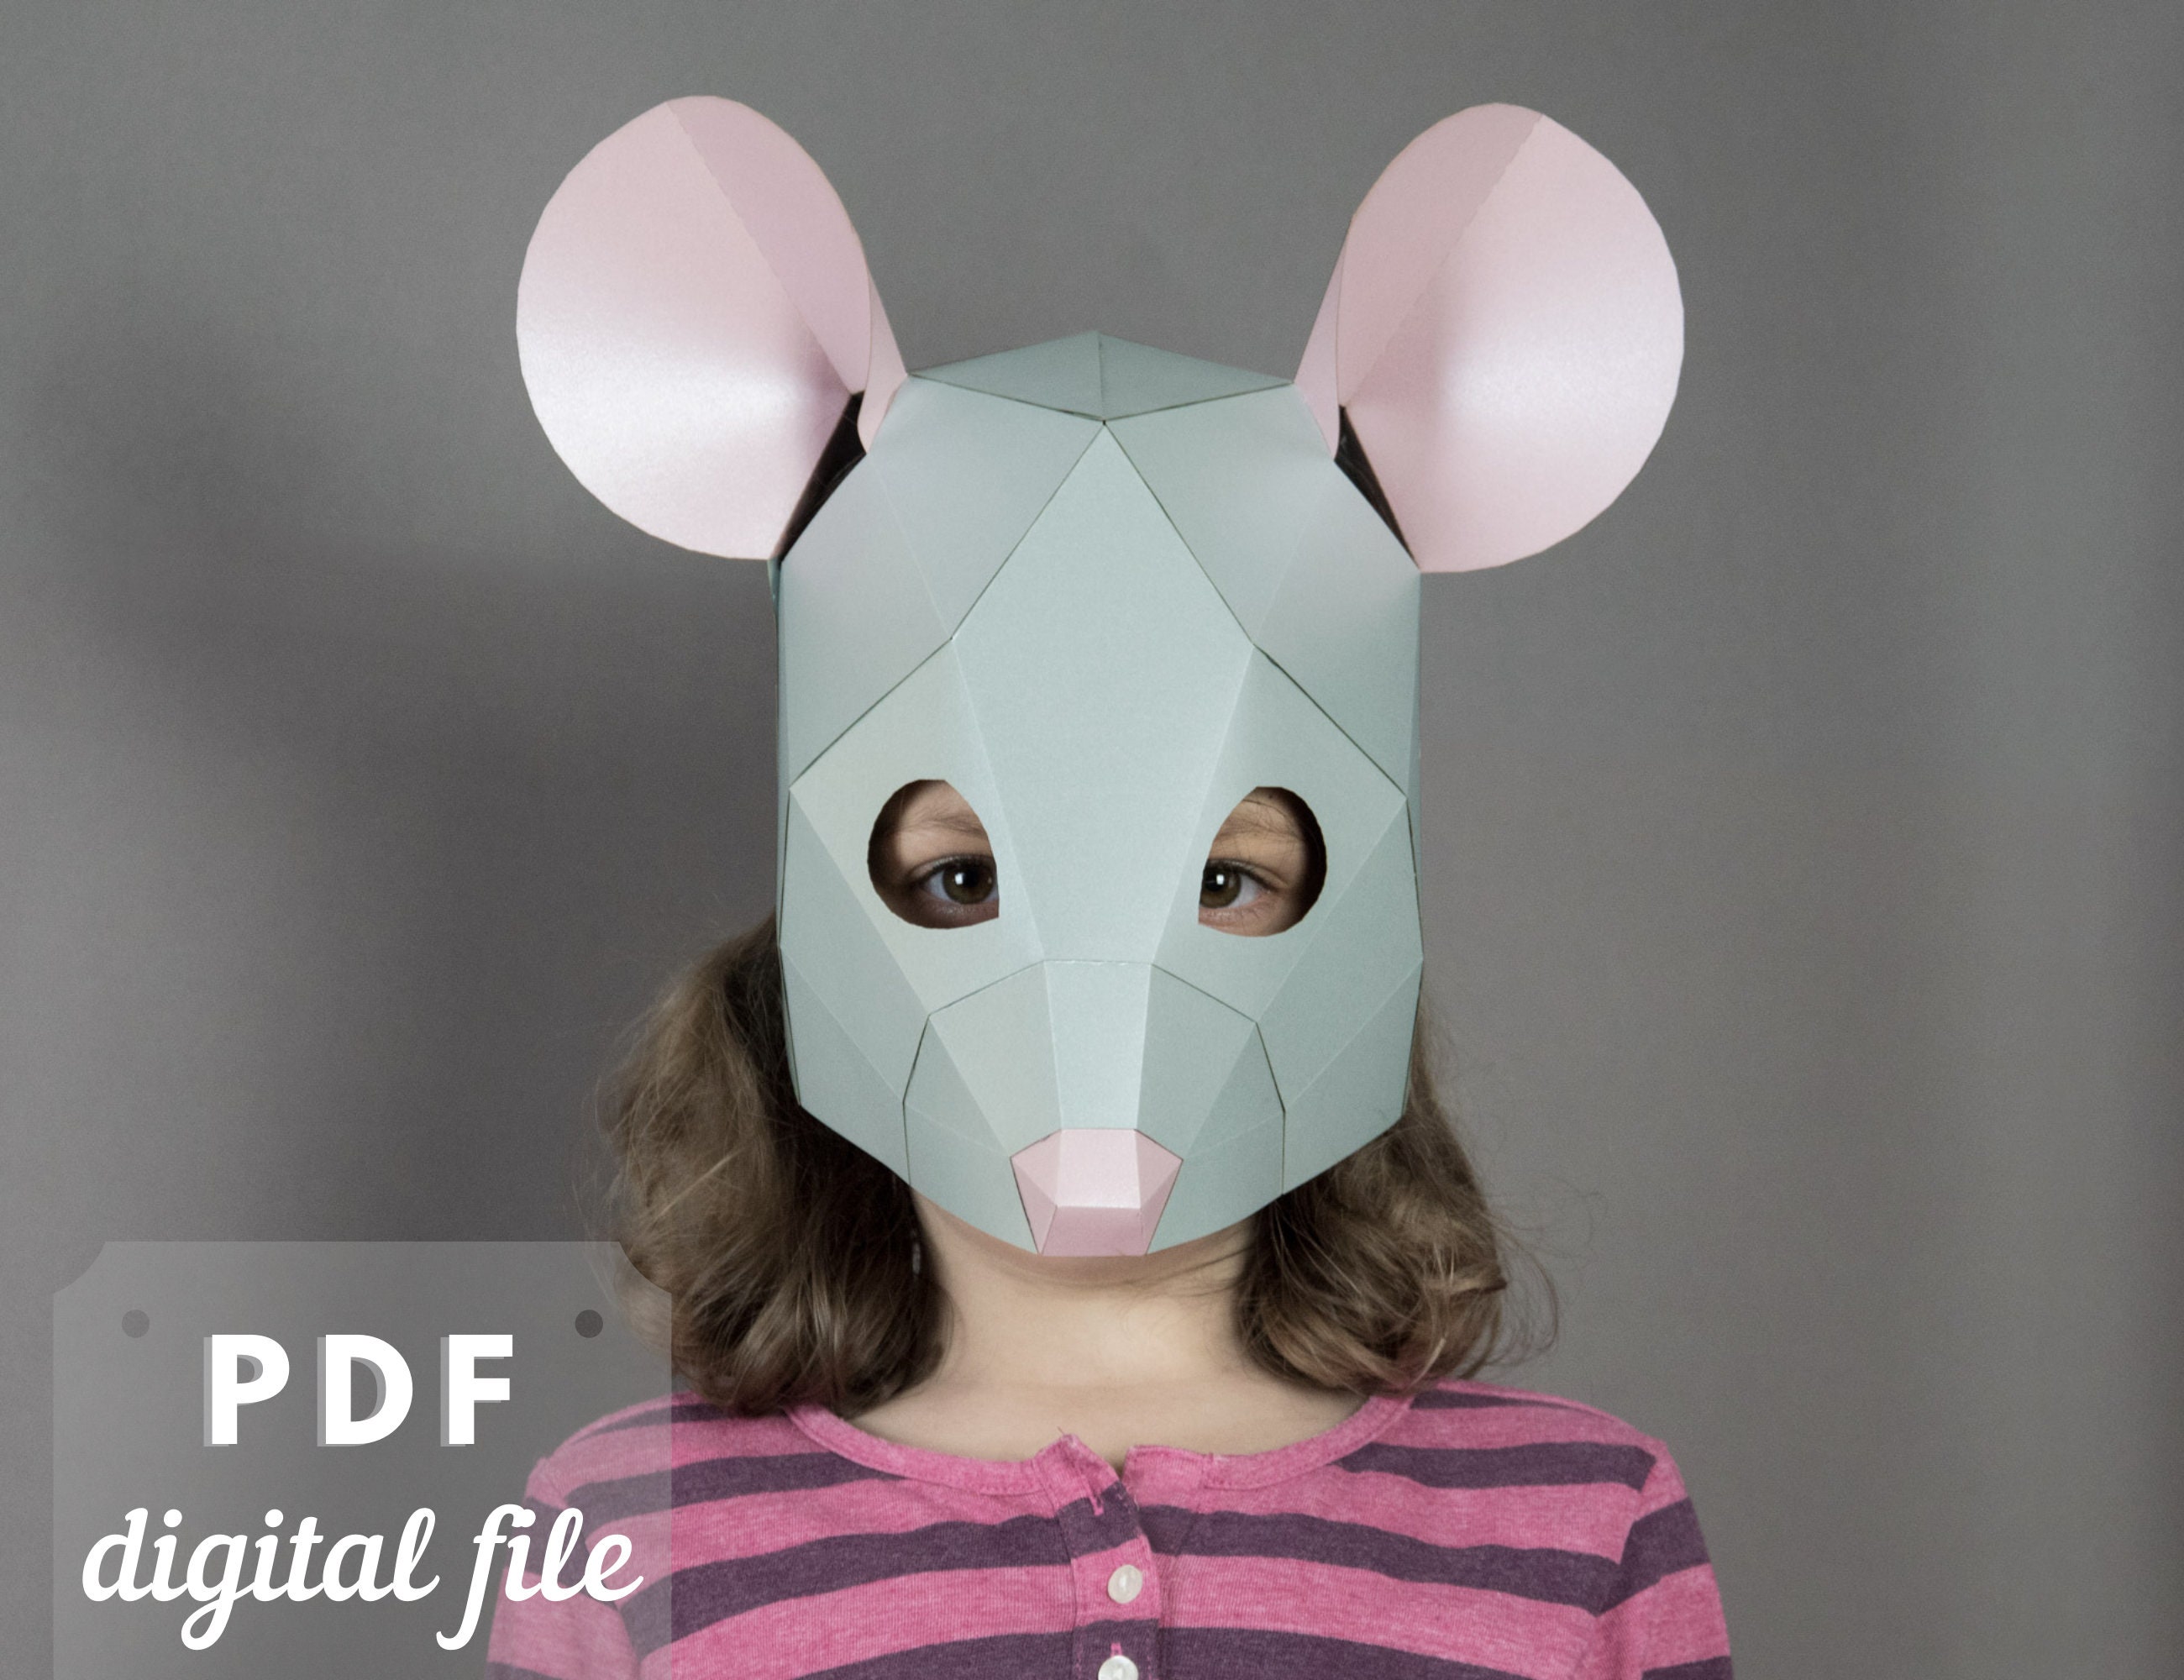 Mask for a Kids Papercraft Pdf Mask. - Etsy